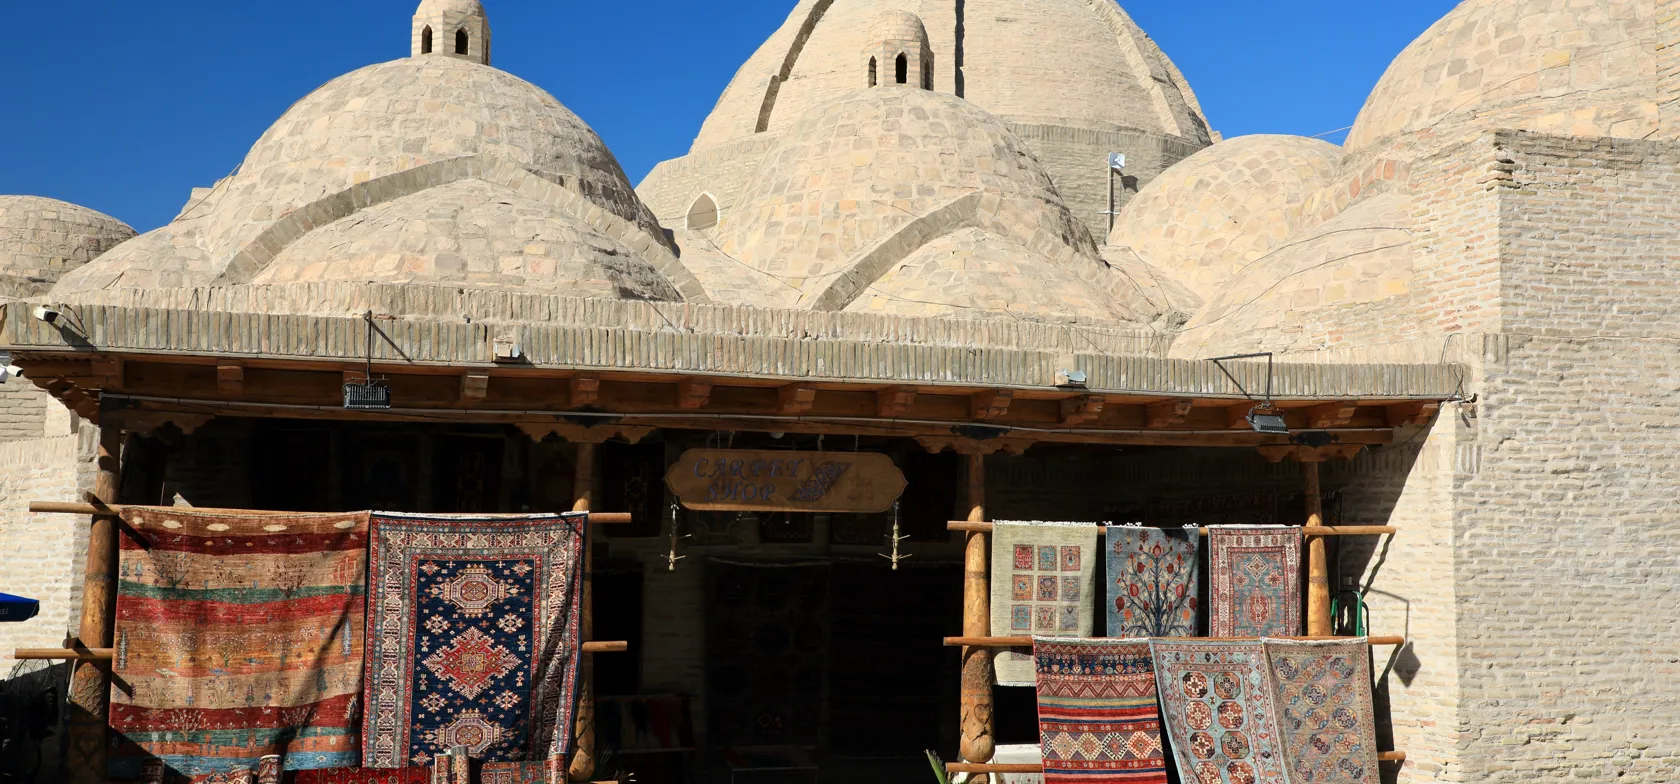 Tæppehandler i Bukhara. Foto af Anders Stoustrup